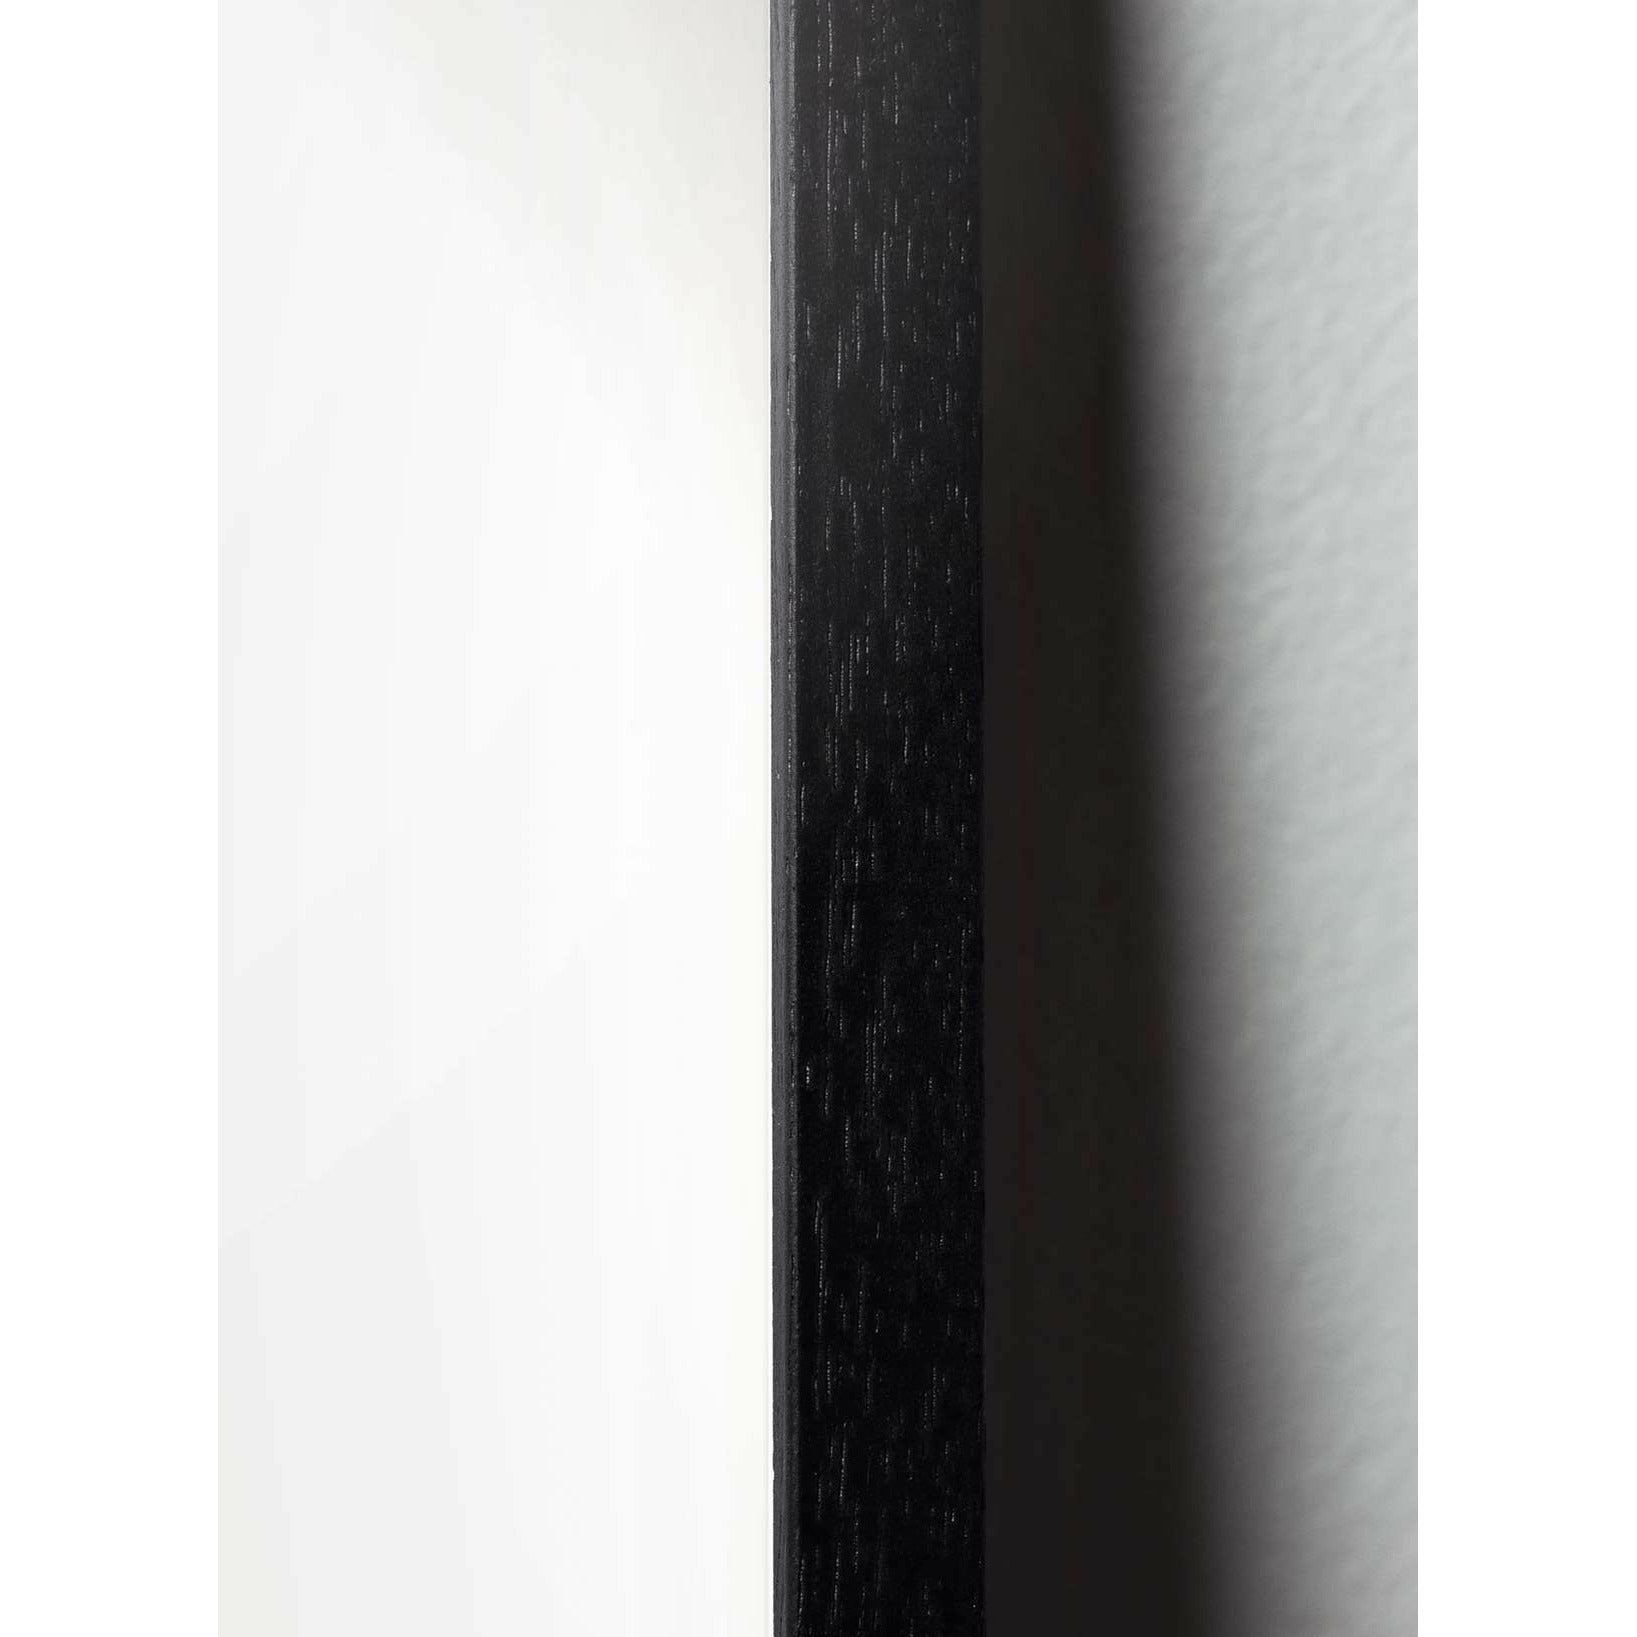 brainchild Affiche classique de fourmi, cadre en bois laqué noir 30x40 cm, fond blanc